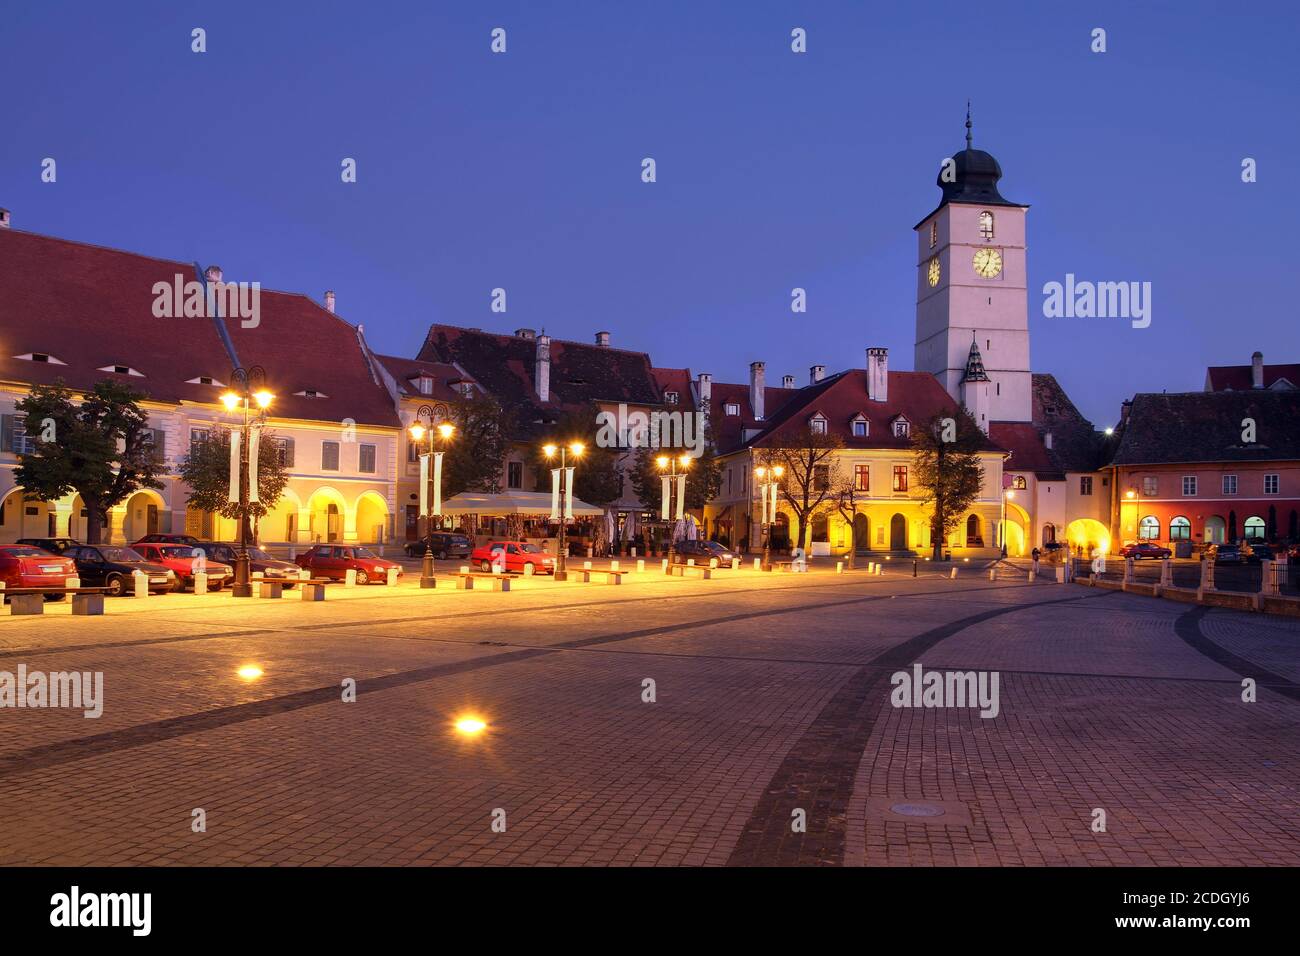 Night scene of the Small Square (Piata Mica) in the historical town of Sibiu, Romania. Stock Photo